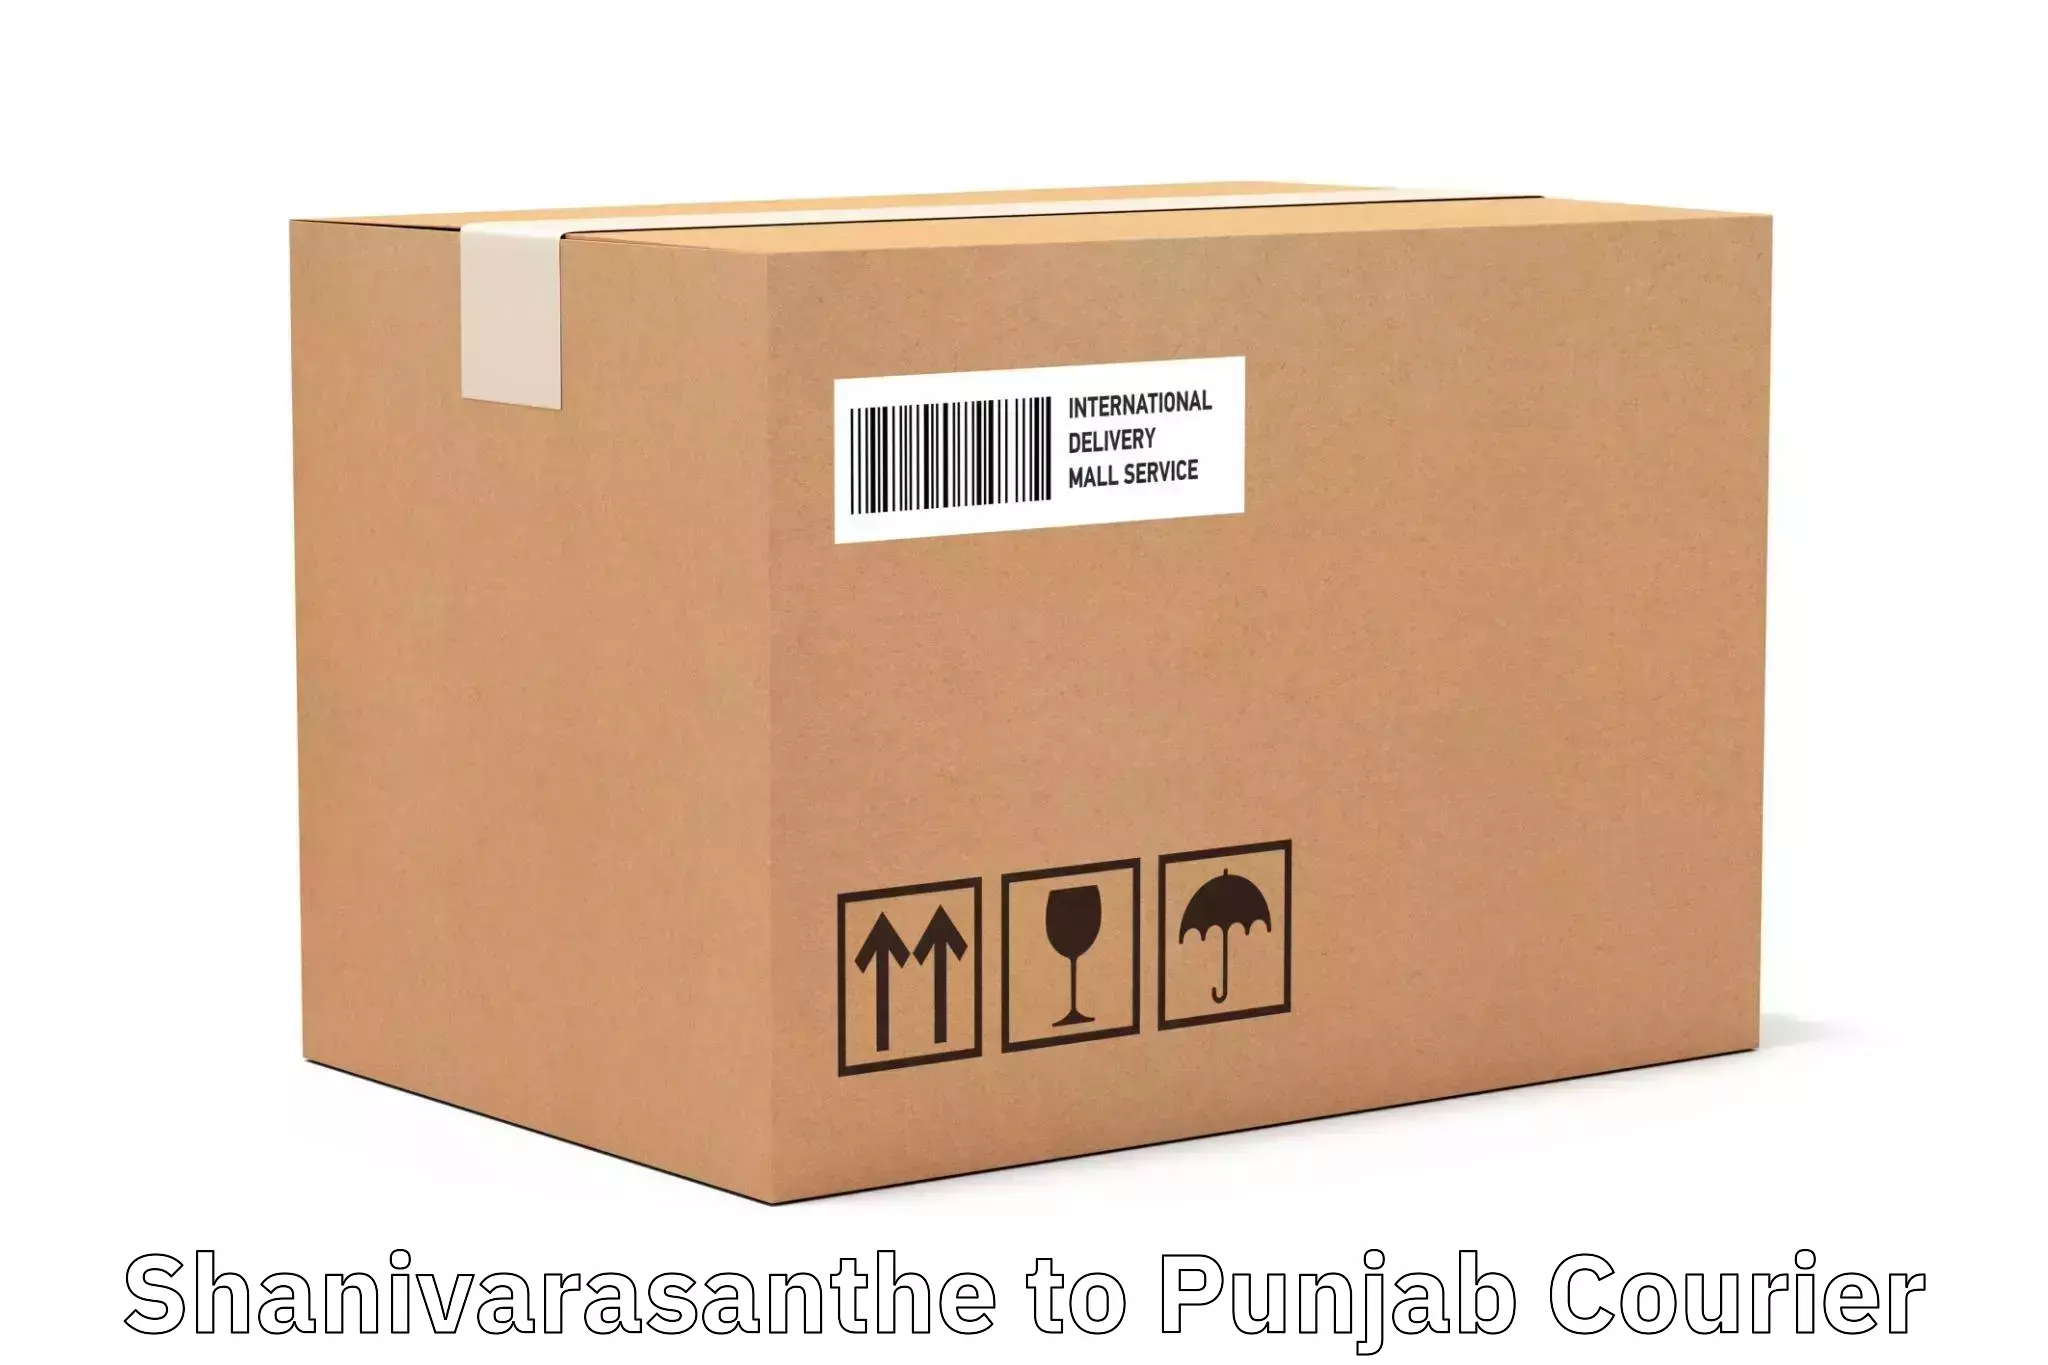 High-capacity parcel service Shanivarasanthe to Dasuya